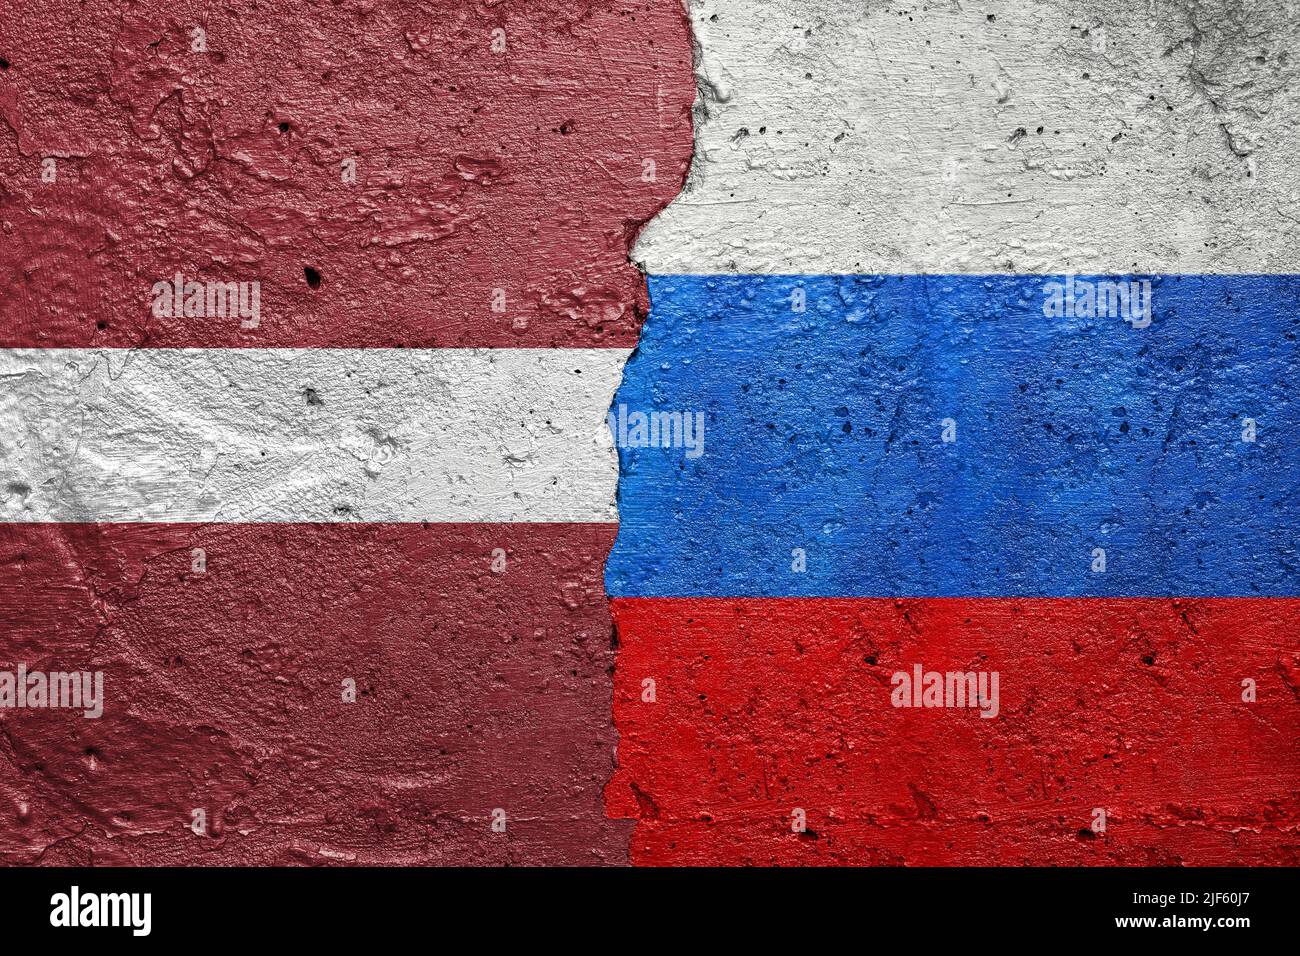 Lettonie et Russie - mur en béton fissuré peint avec un drapeau letton à gauche et un drapeau russe à droite Banque D'Images